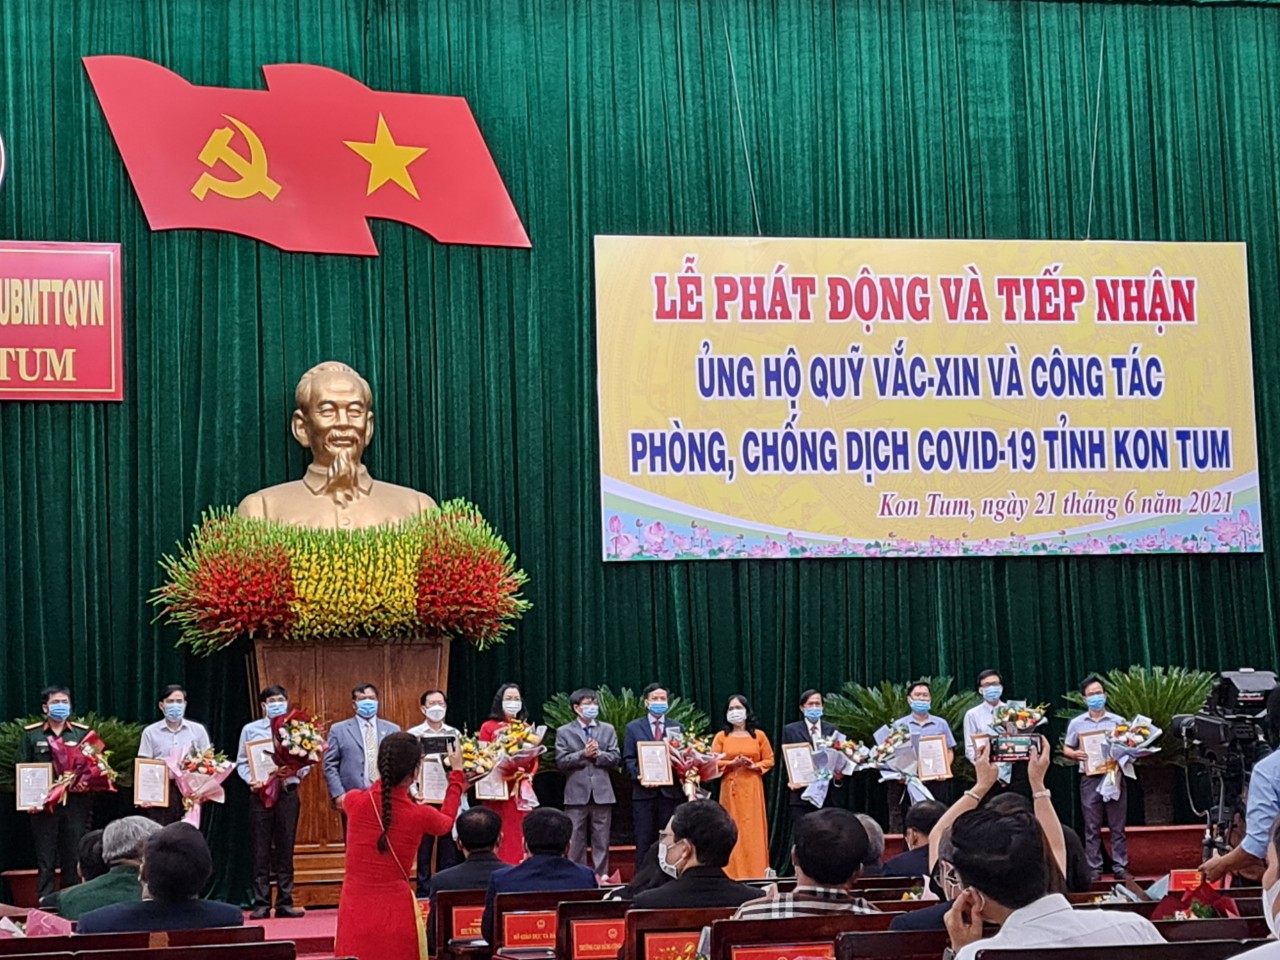 Trao tiền ủng hộ quỹ vacxin COVID-19 cho UB MTTQ tỉnh Gia Lai, tỉnh Kon Tum